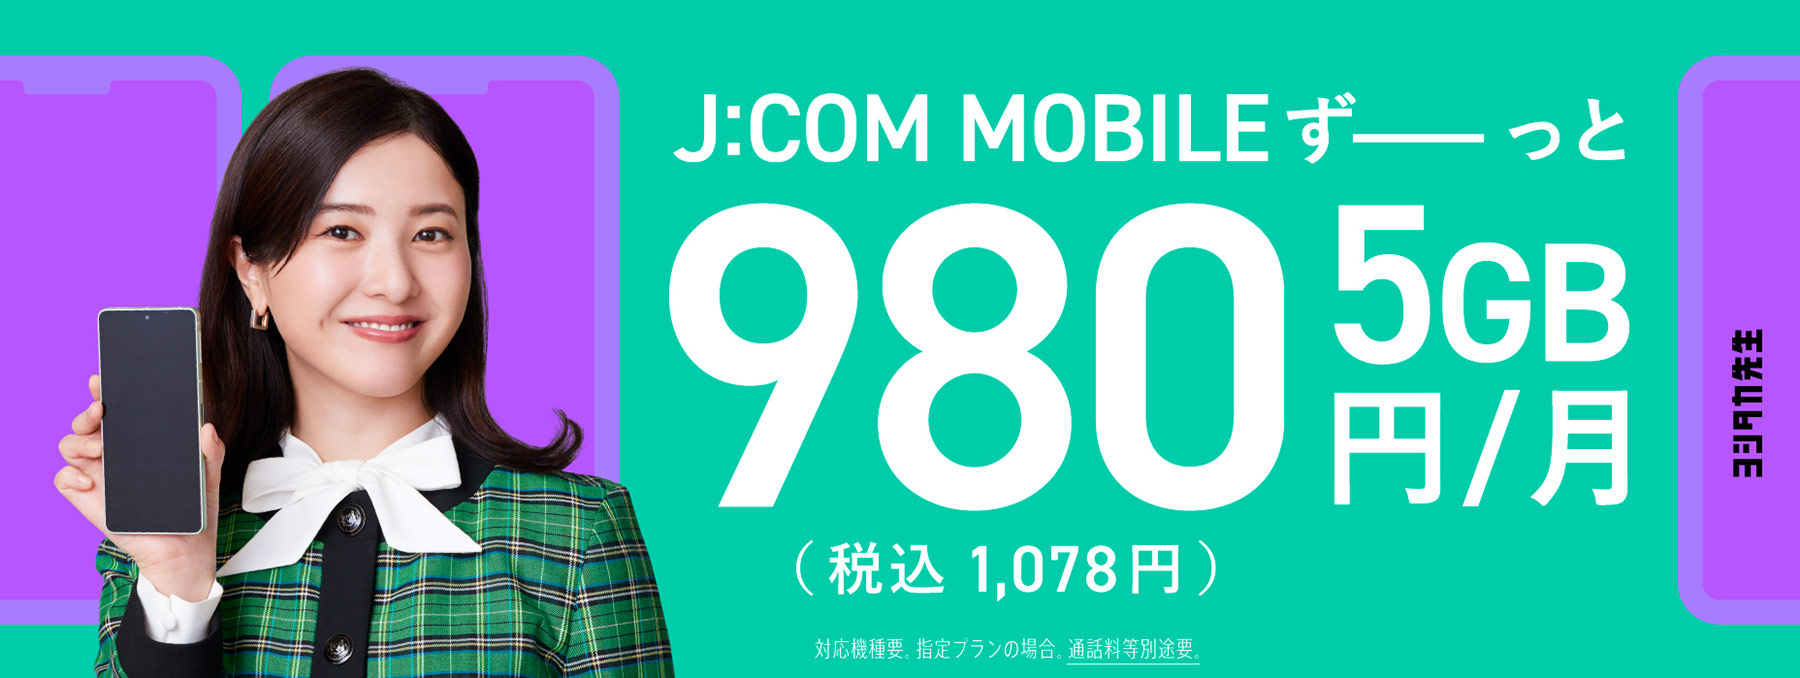 J:COM MOBILE ずーっと 5GB 980円/月